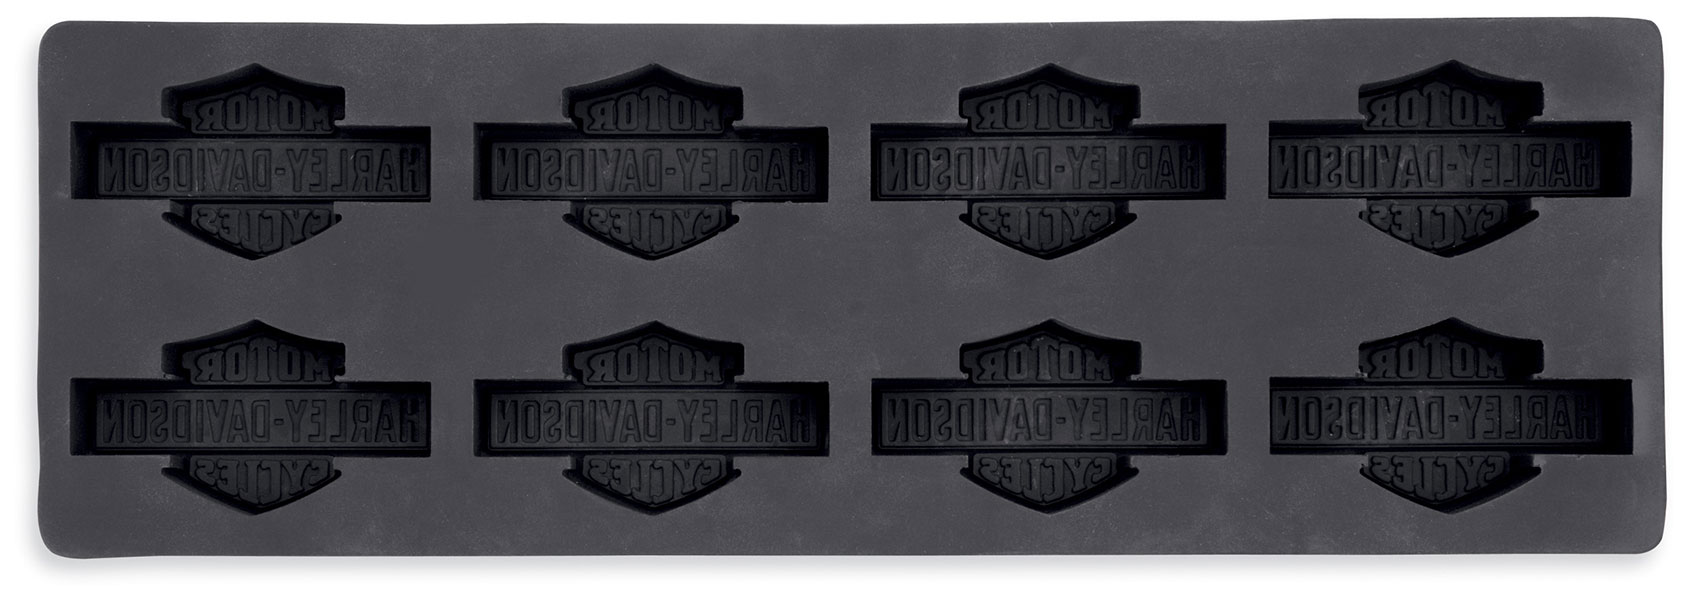 Harley Trademark Bar & Shield Logo Ice Cube Tray